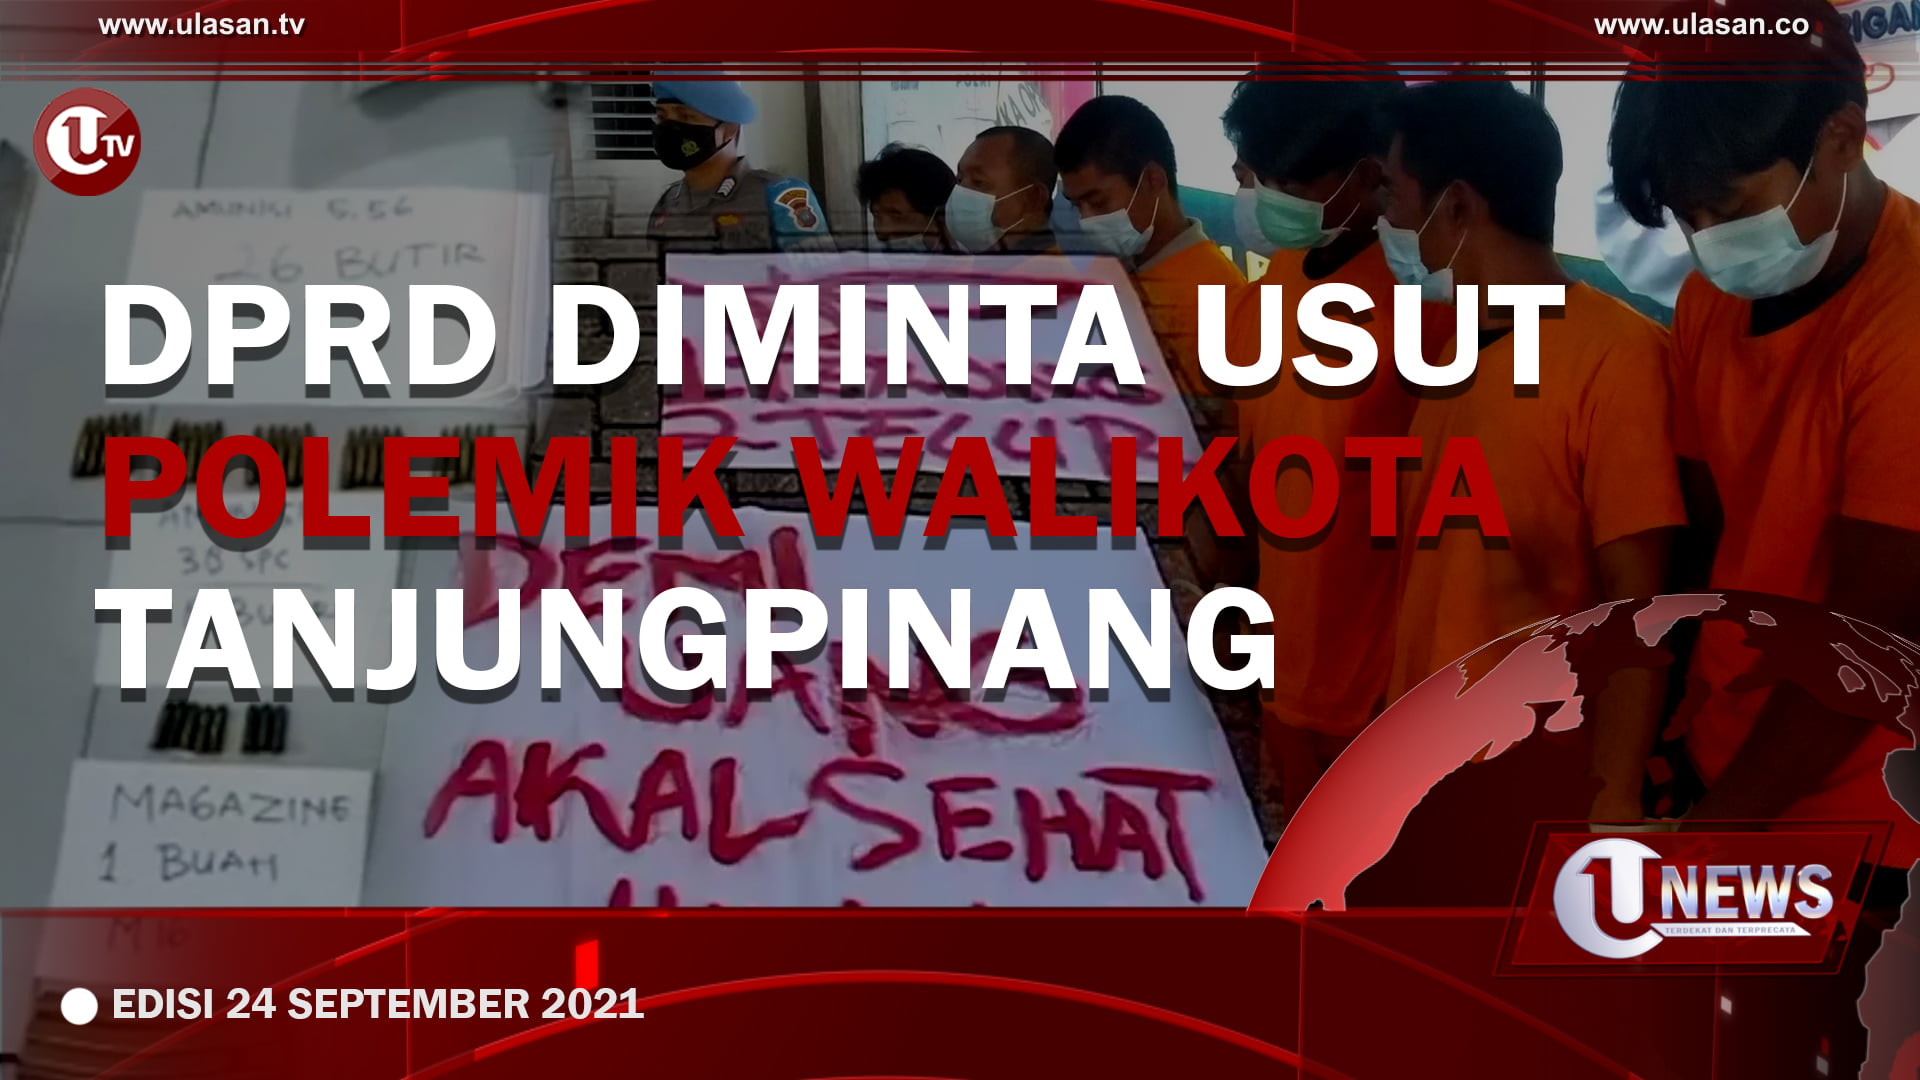 [U-NEWS] DPRD Diminta Usut Polemik Walikota Tanjungpinang | U-NEWS EDISI 24 SEPTEMBER 2021